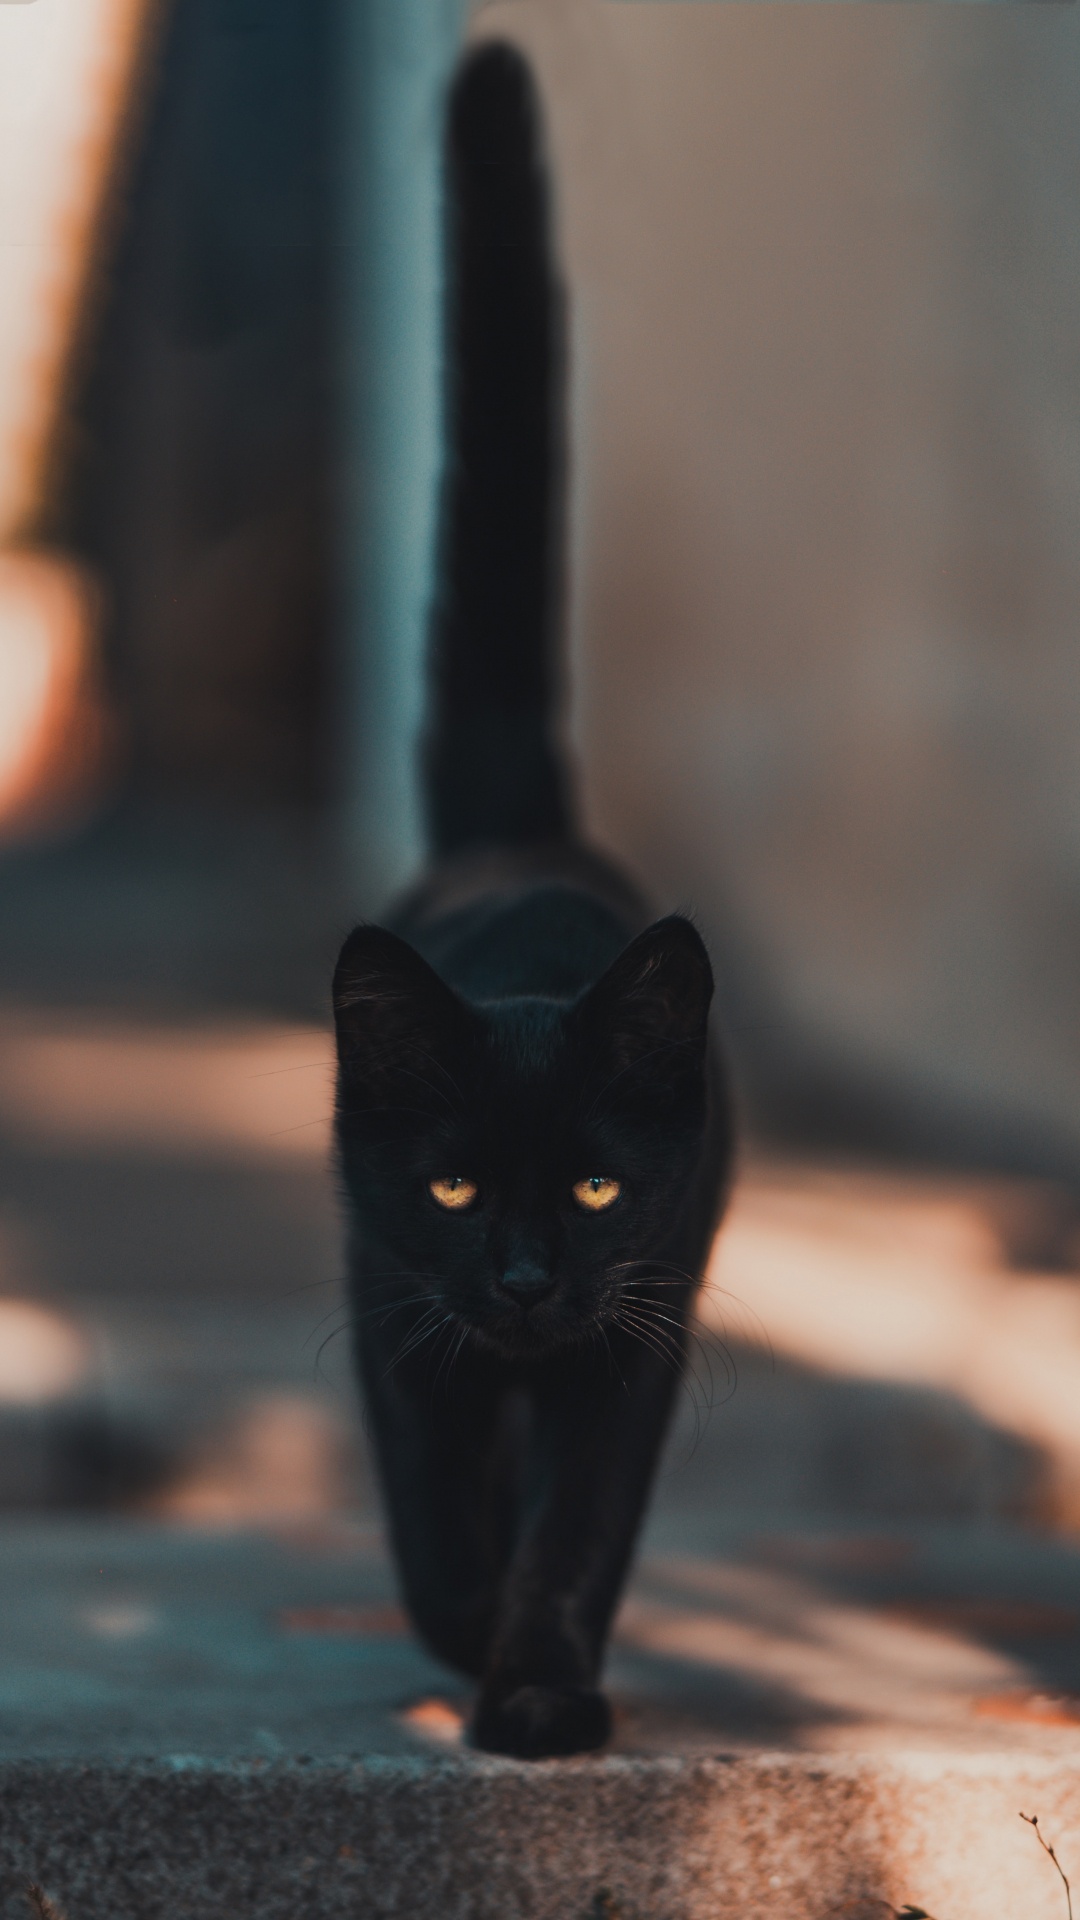 Gato Negro Caminando Por la Calle. Wallpaper in 1080x1920 Resolution